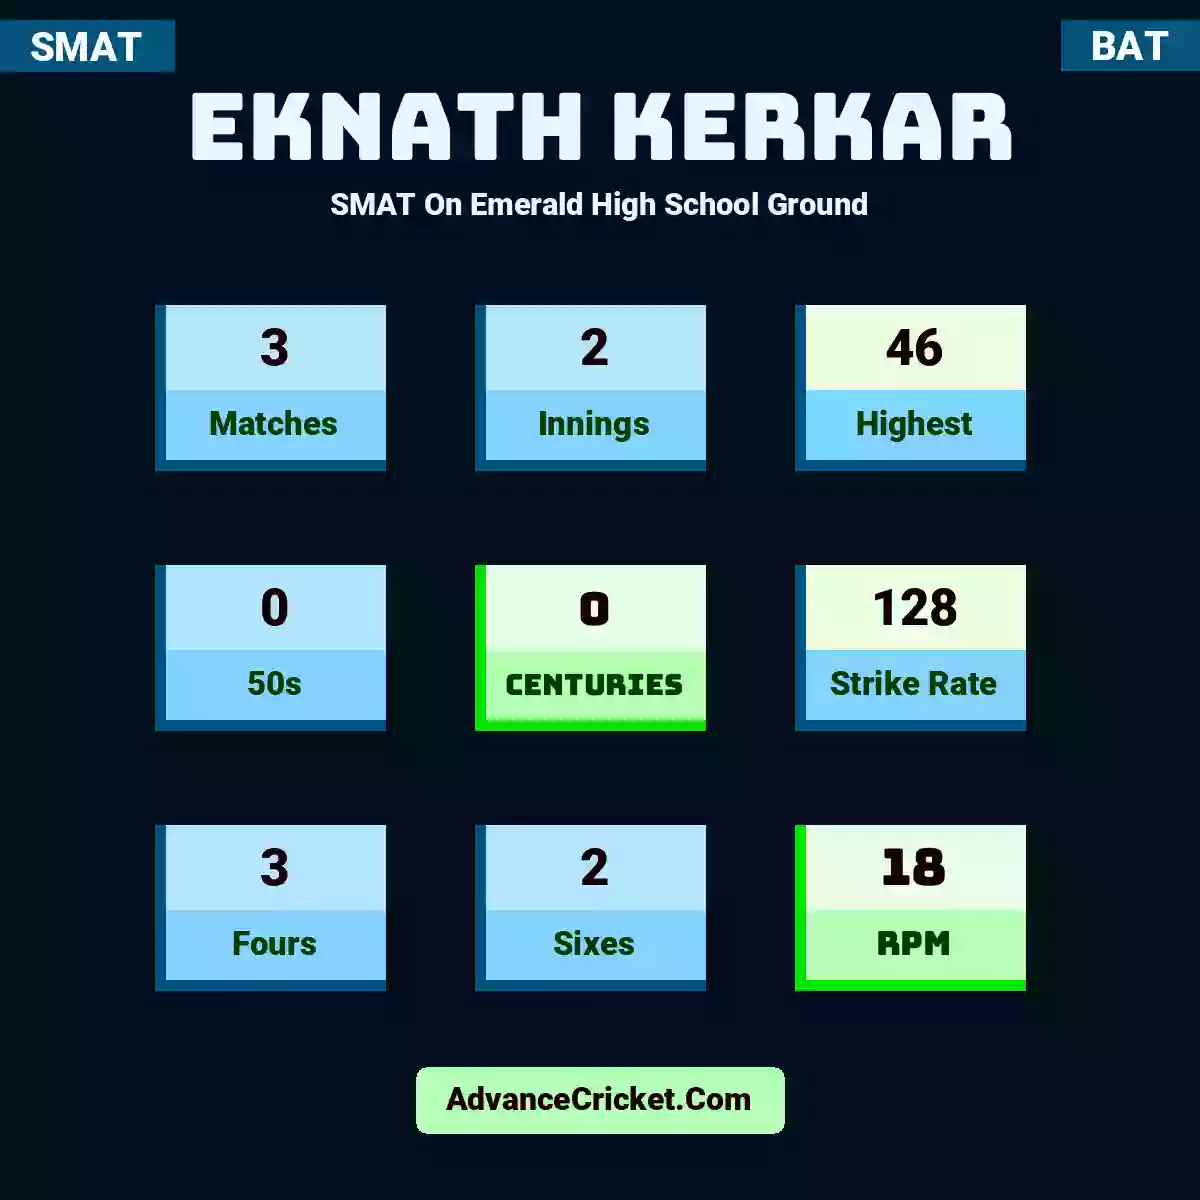 Eknath Kerkar SMAT  On Emerald High School Ground, Eknath Kerkar played 3 matches, scored 46 runs as highest, 0 half-centuries, and 0 centuries, with a strike rate of 128. E.Kerkar hit 3 fours and 2 sixes, with an RPM of 18.